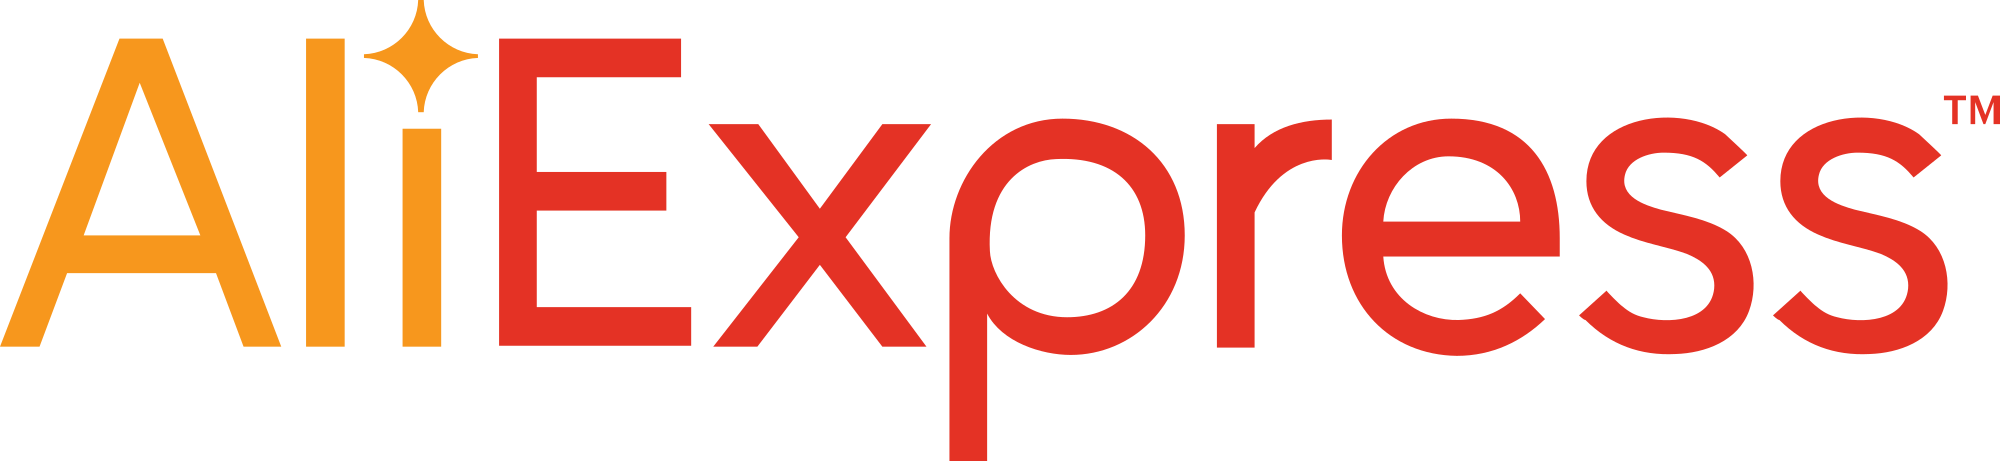 aliexpress logo groß